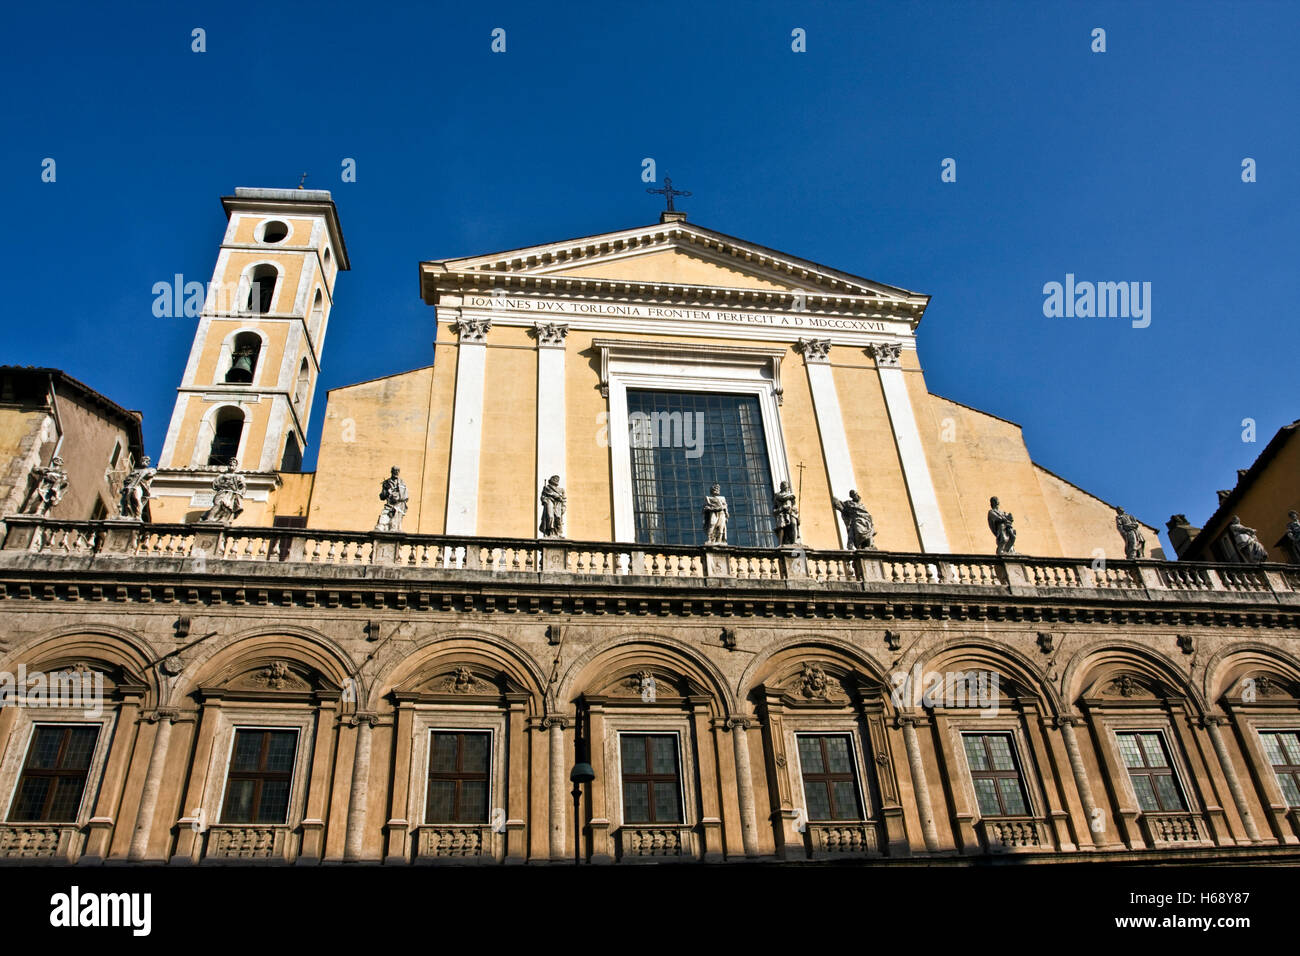 L'Église des Douze Saints Apôtres, baroque, architectes Baccio Pontelli, Carlo Rainaldi, Carlo Fontana, 1714, Rome, Italie Banque D'Images